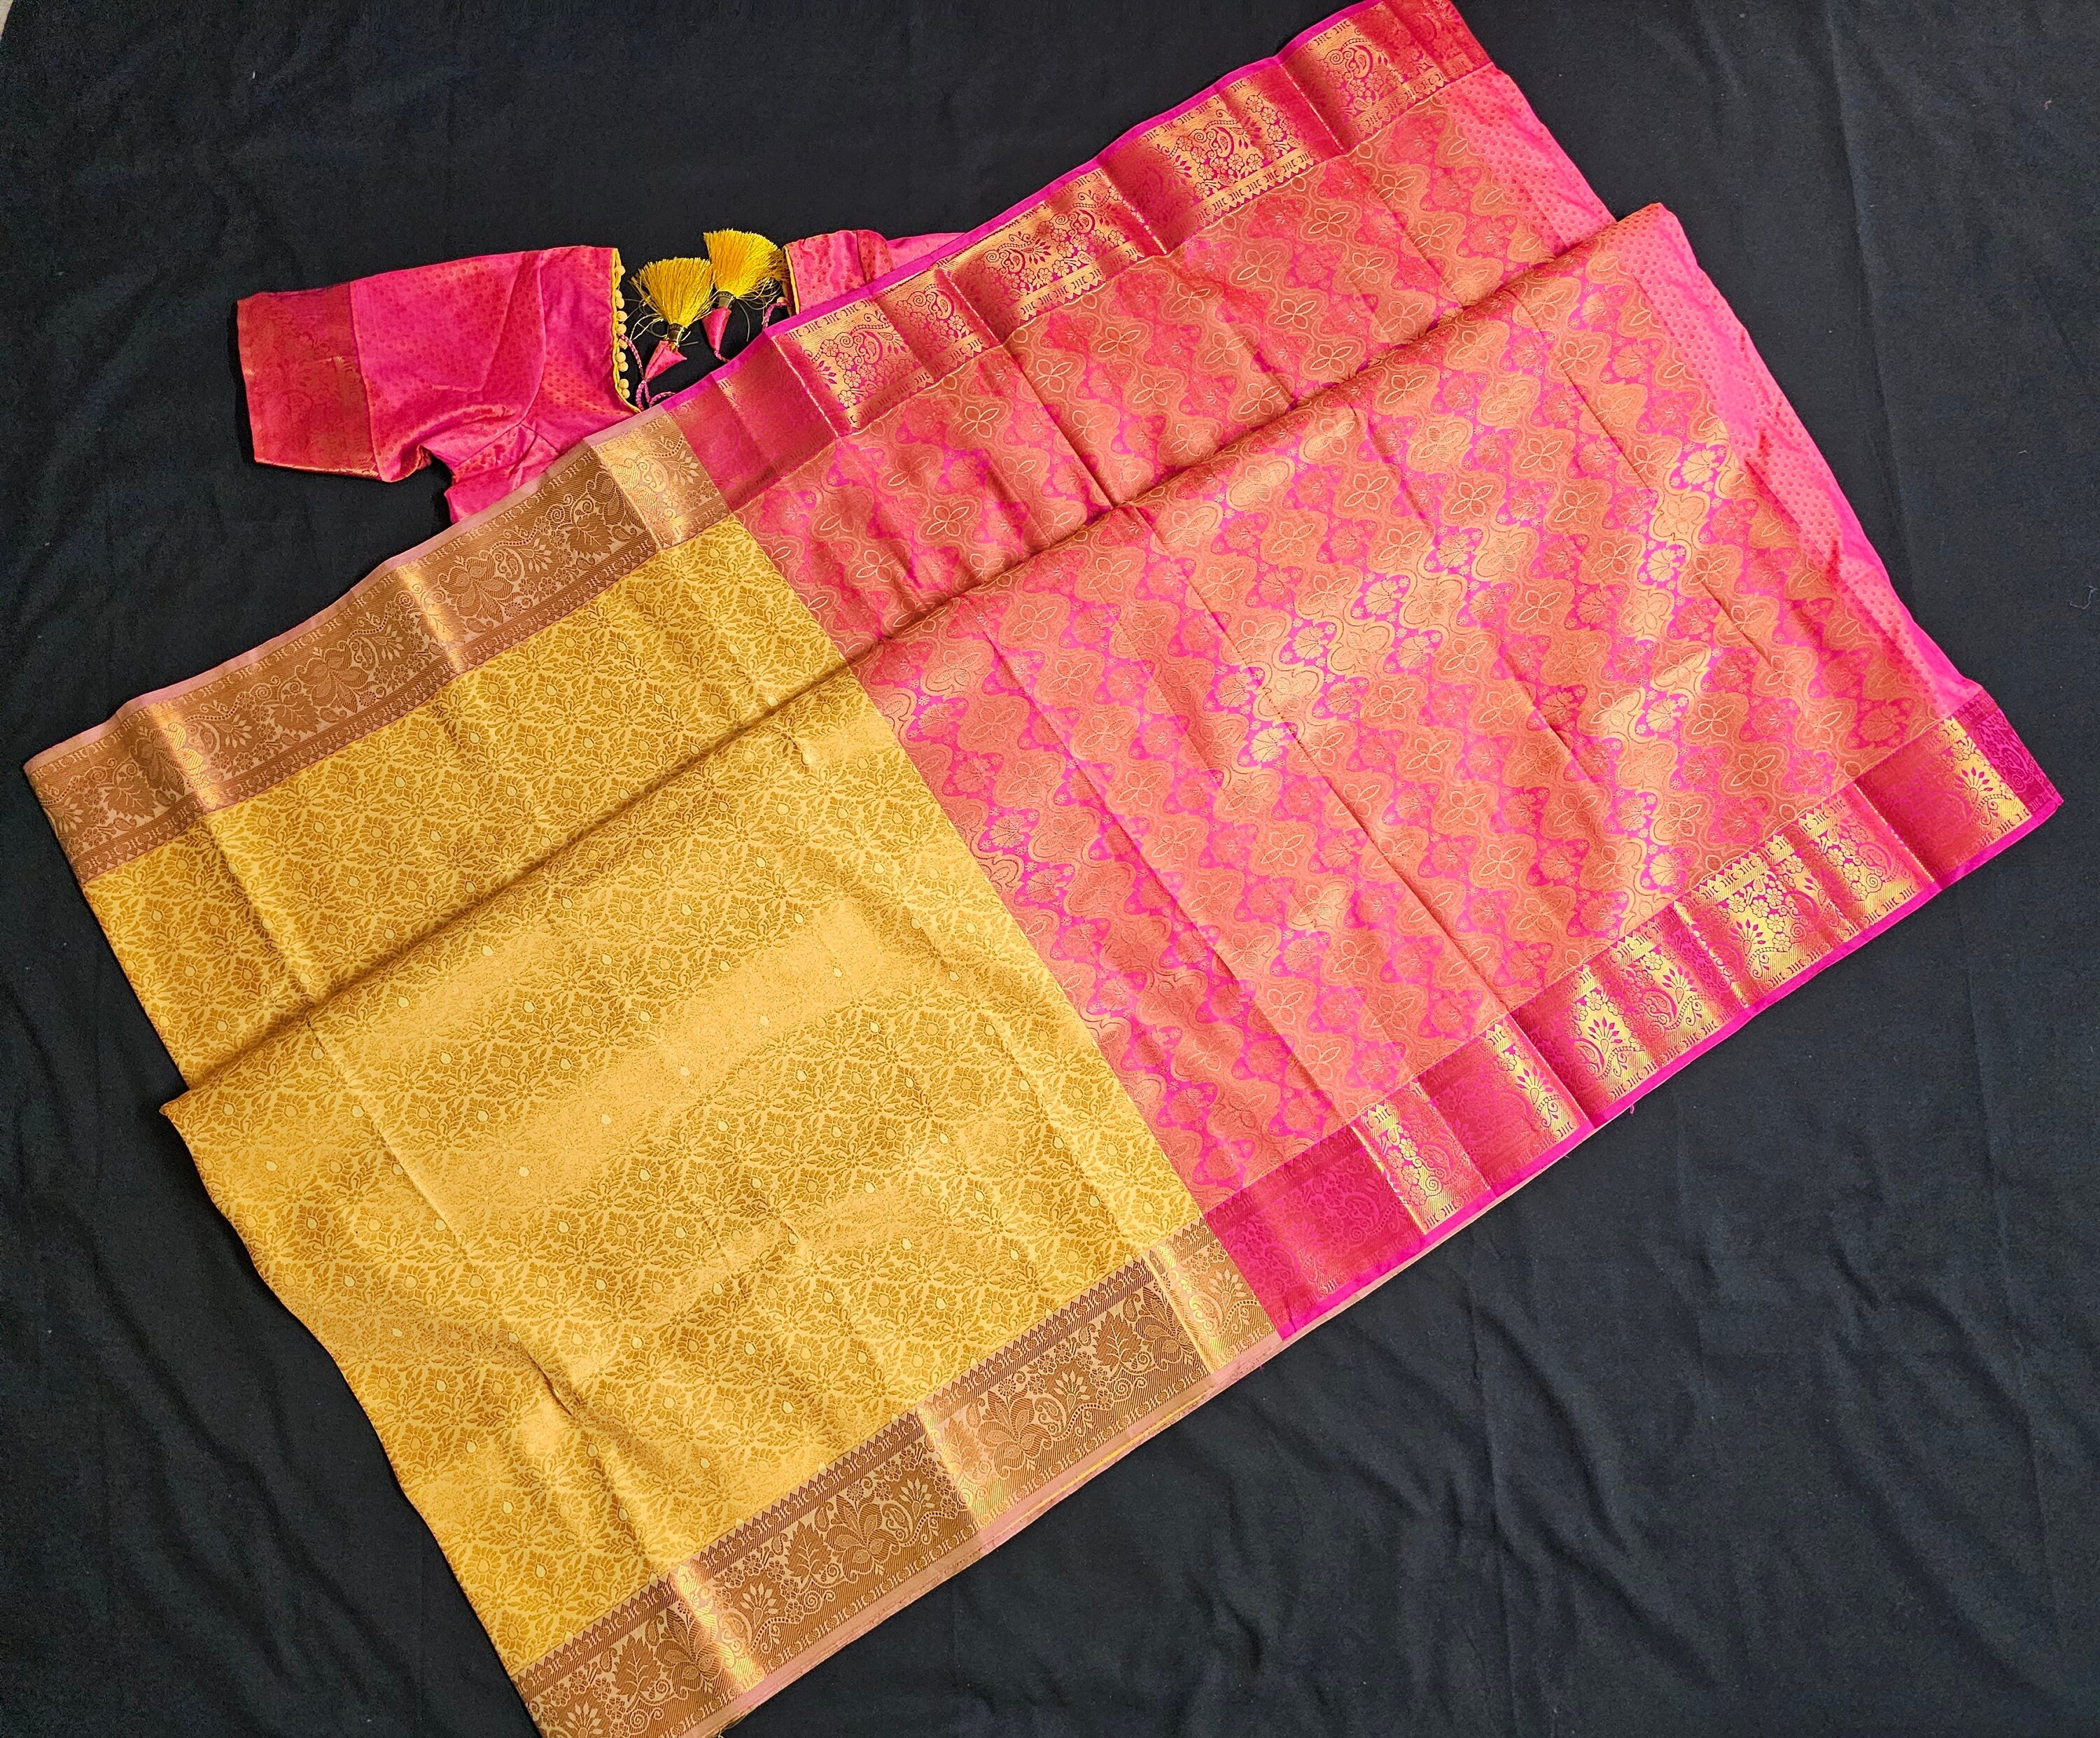 Bridal wear - Traditional wedding Saree - Brocade Saree -Kanchipuram pattern rich zari pallu with stitched blouse - Blouse size 34 (Upto 38)